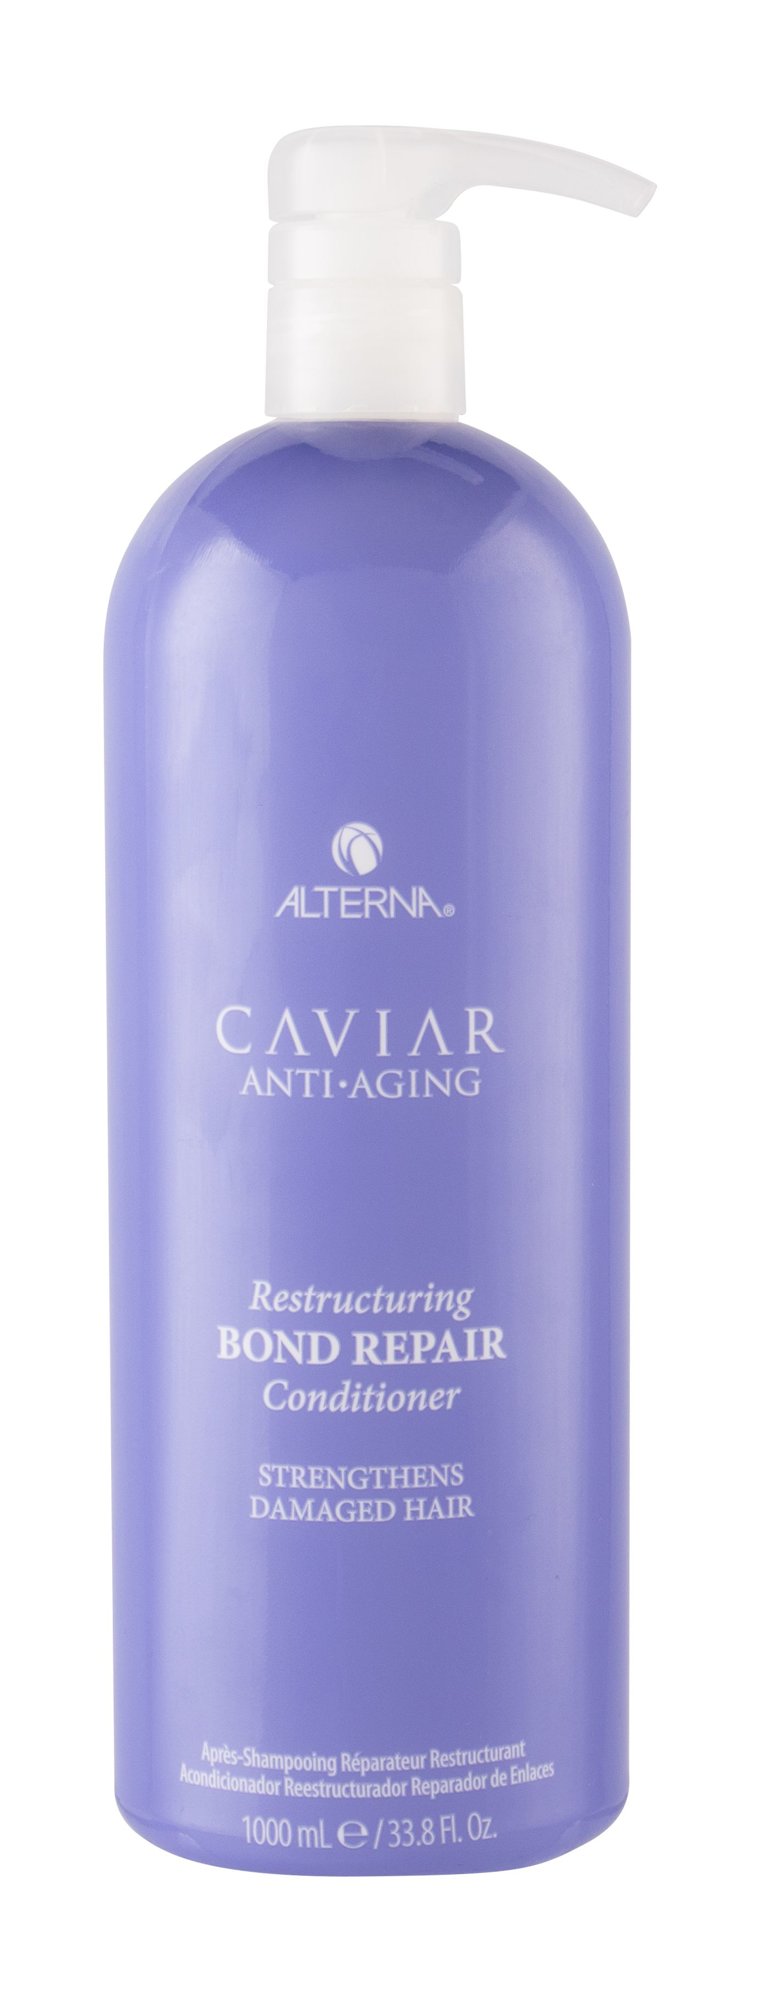 Alterna Caviar Anti-Aging Restructuring Bond Repair 1000ml kondicionierius